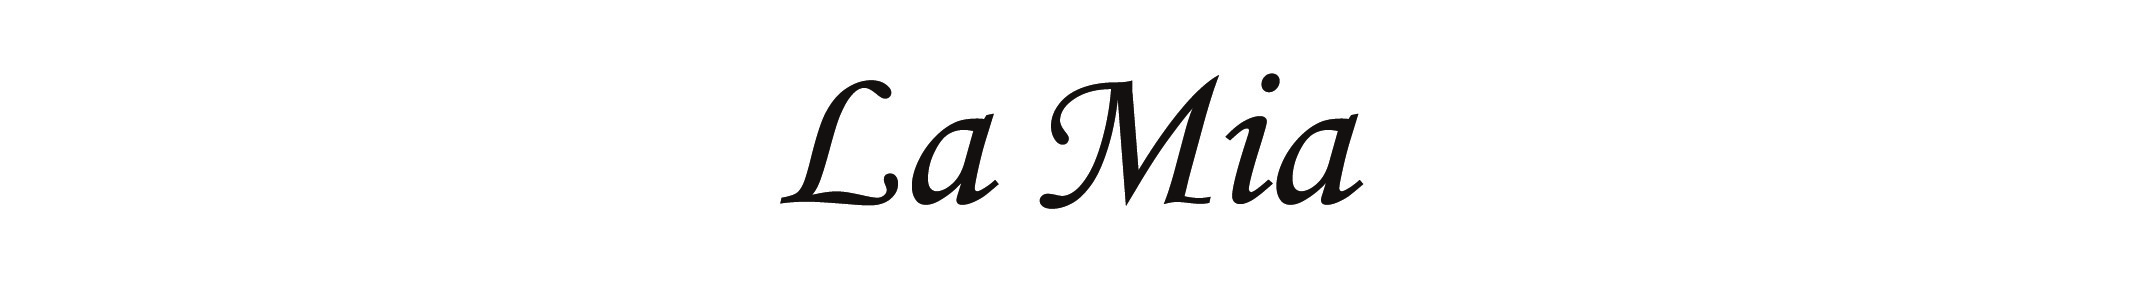 lamia logo-01